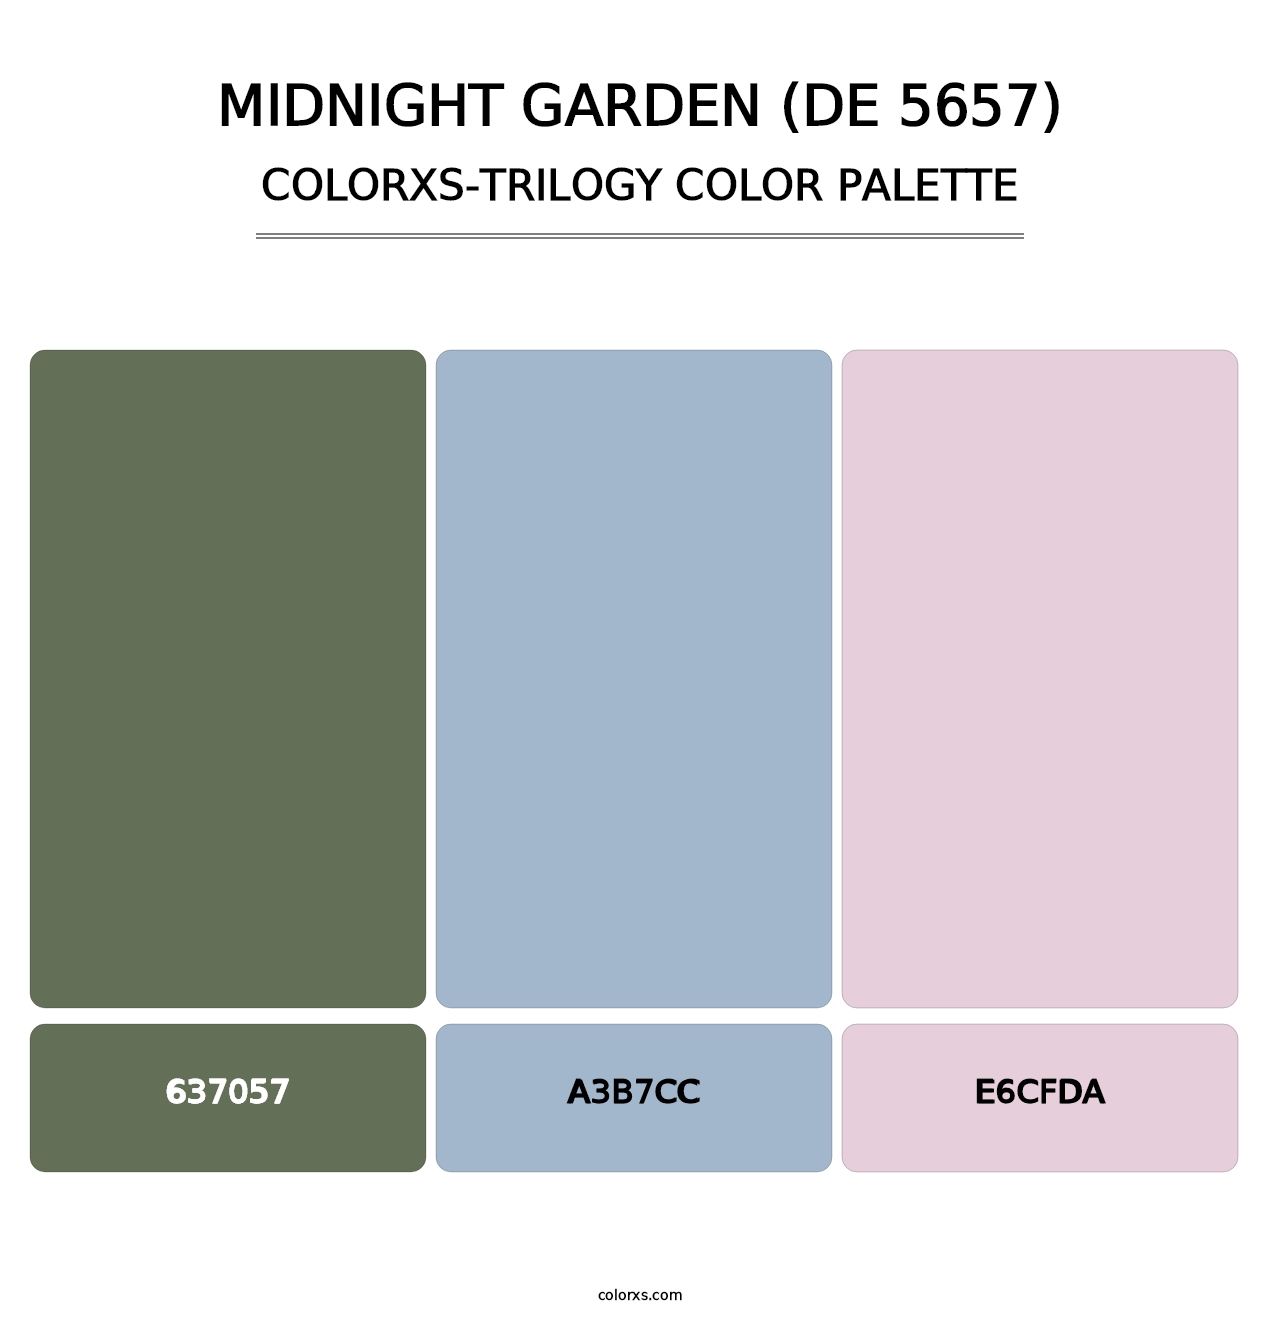 Midnight Garden (DE 5657) - Colorxs Trilogy Palette